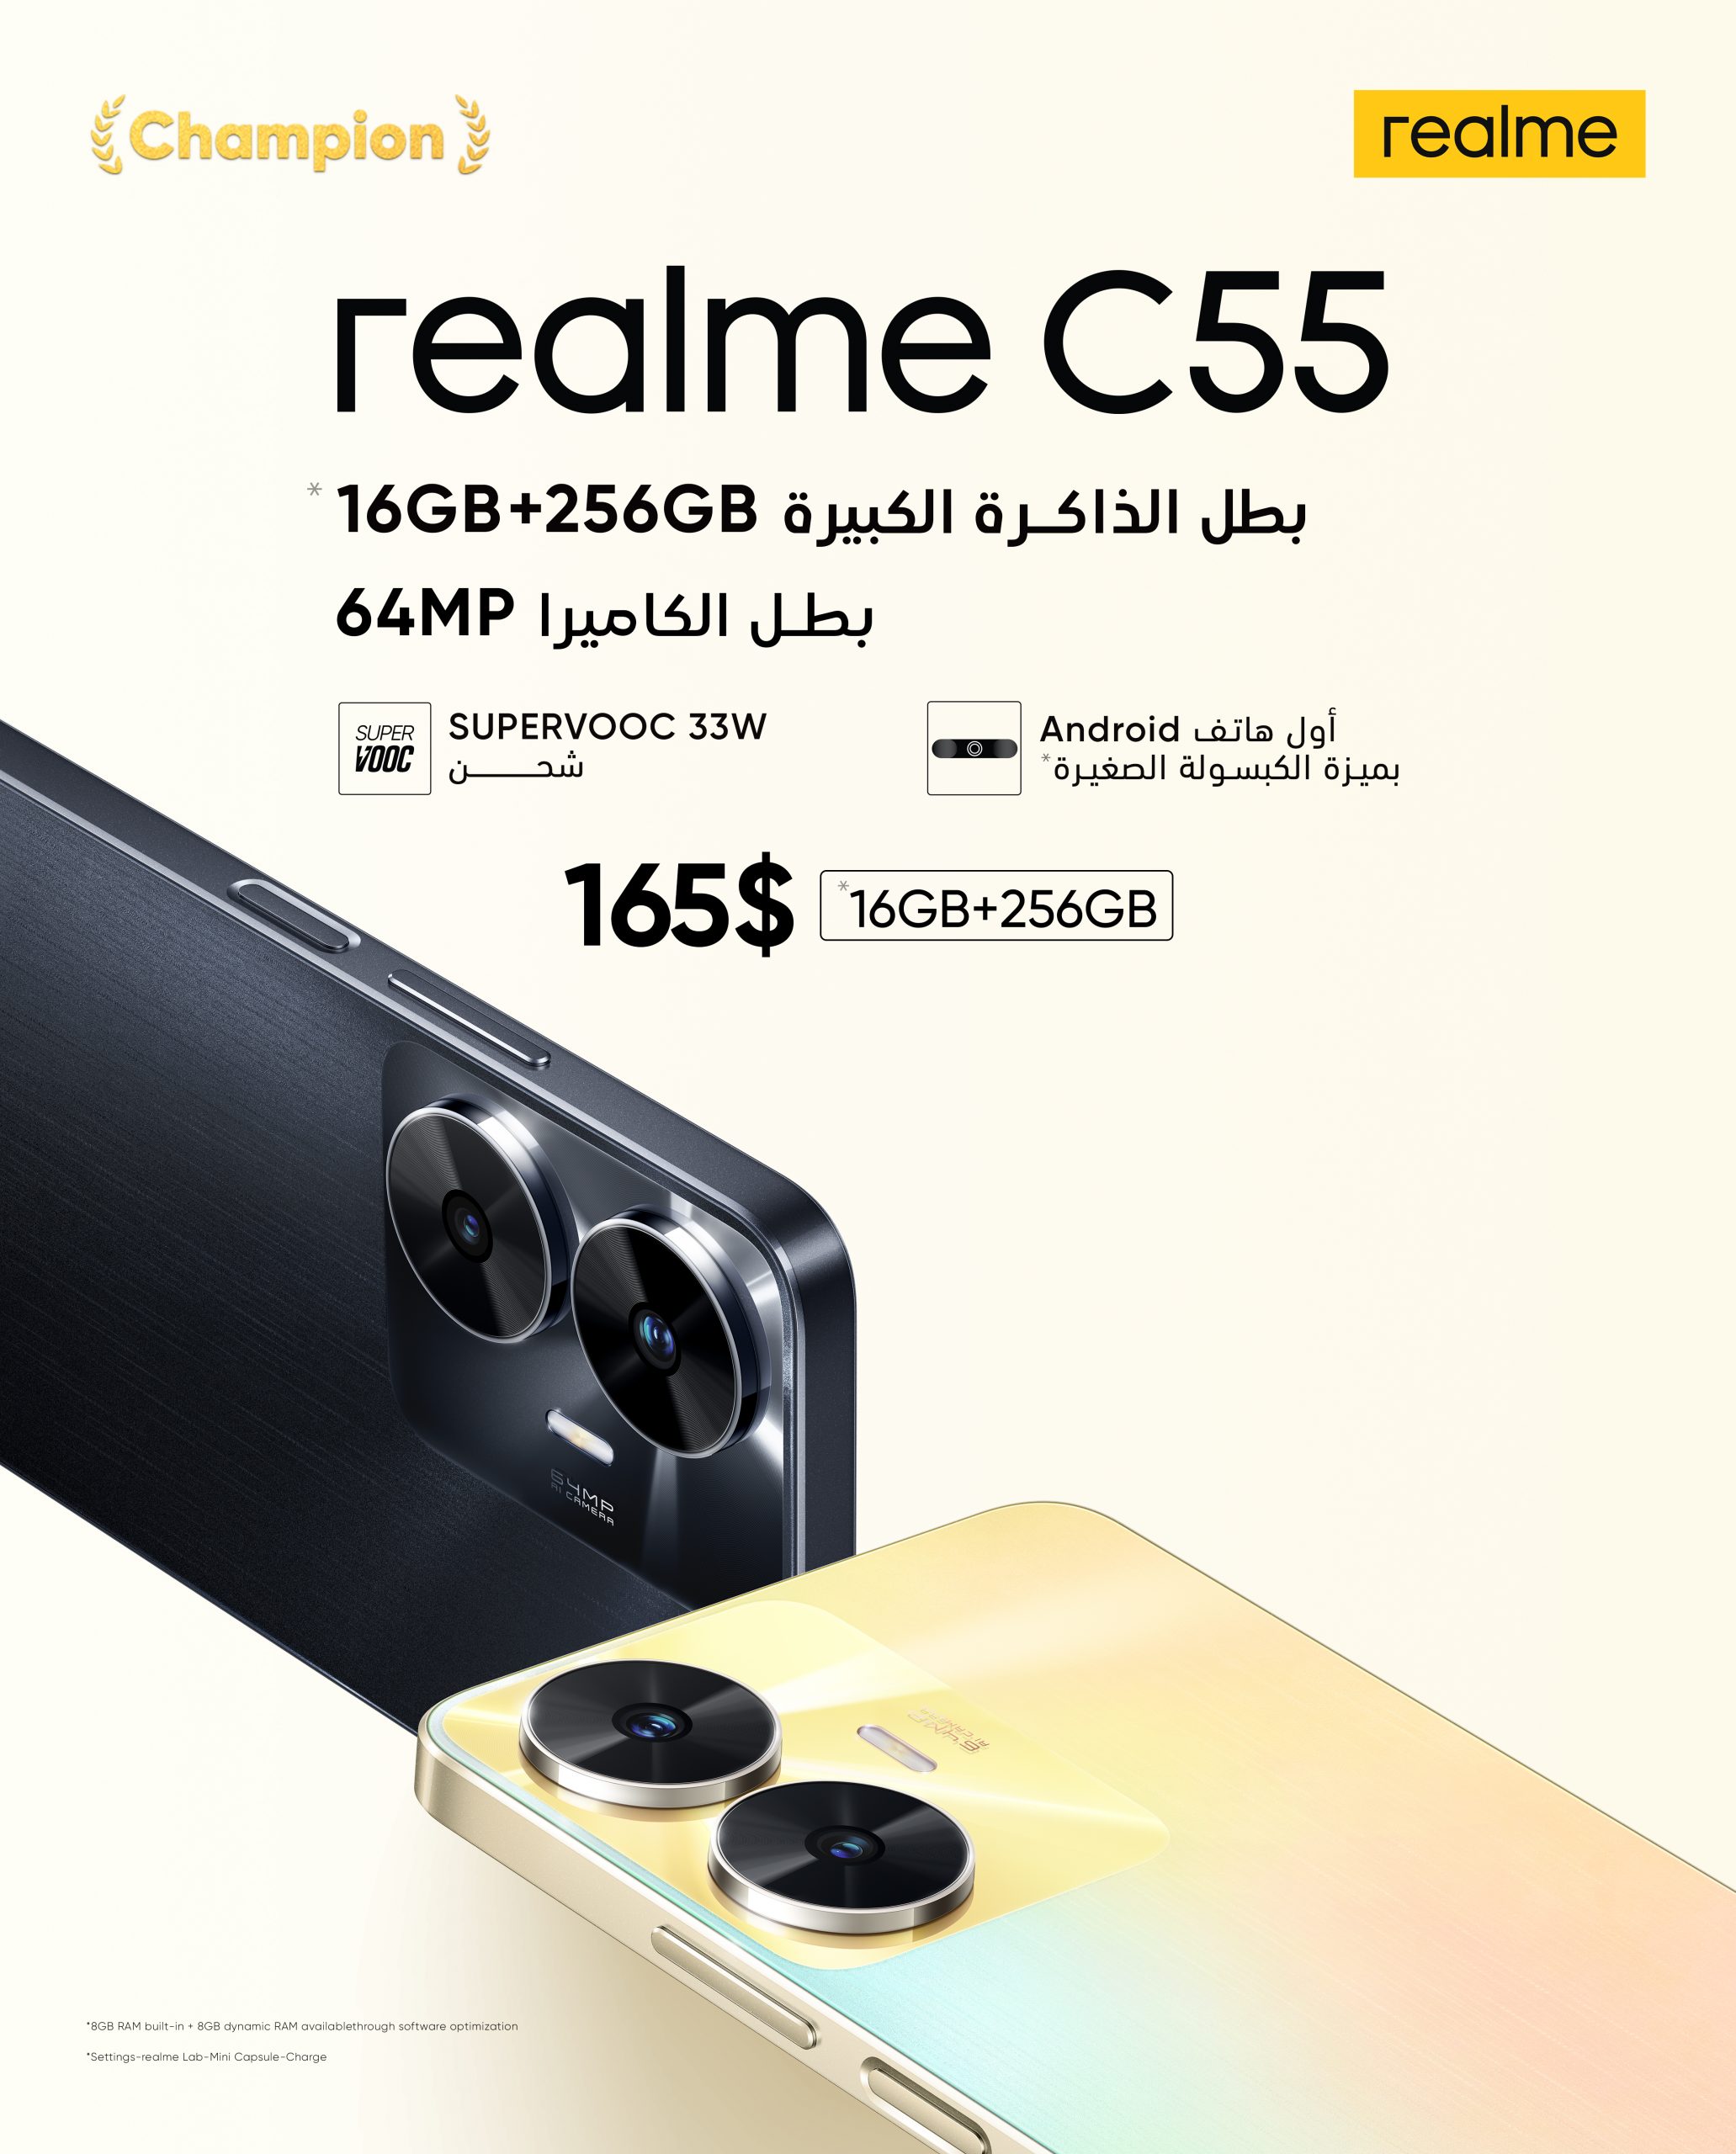 هاتف realme C55 متوفر الآن في العراق بسعة تخزين 16 + 256 جيجابايت